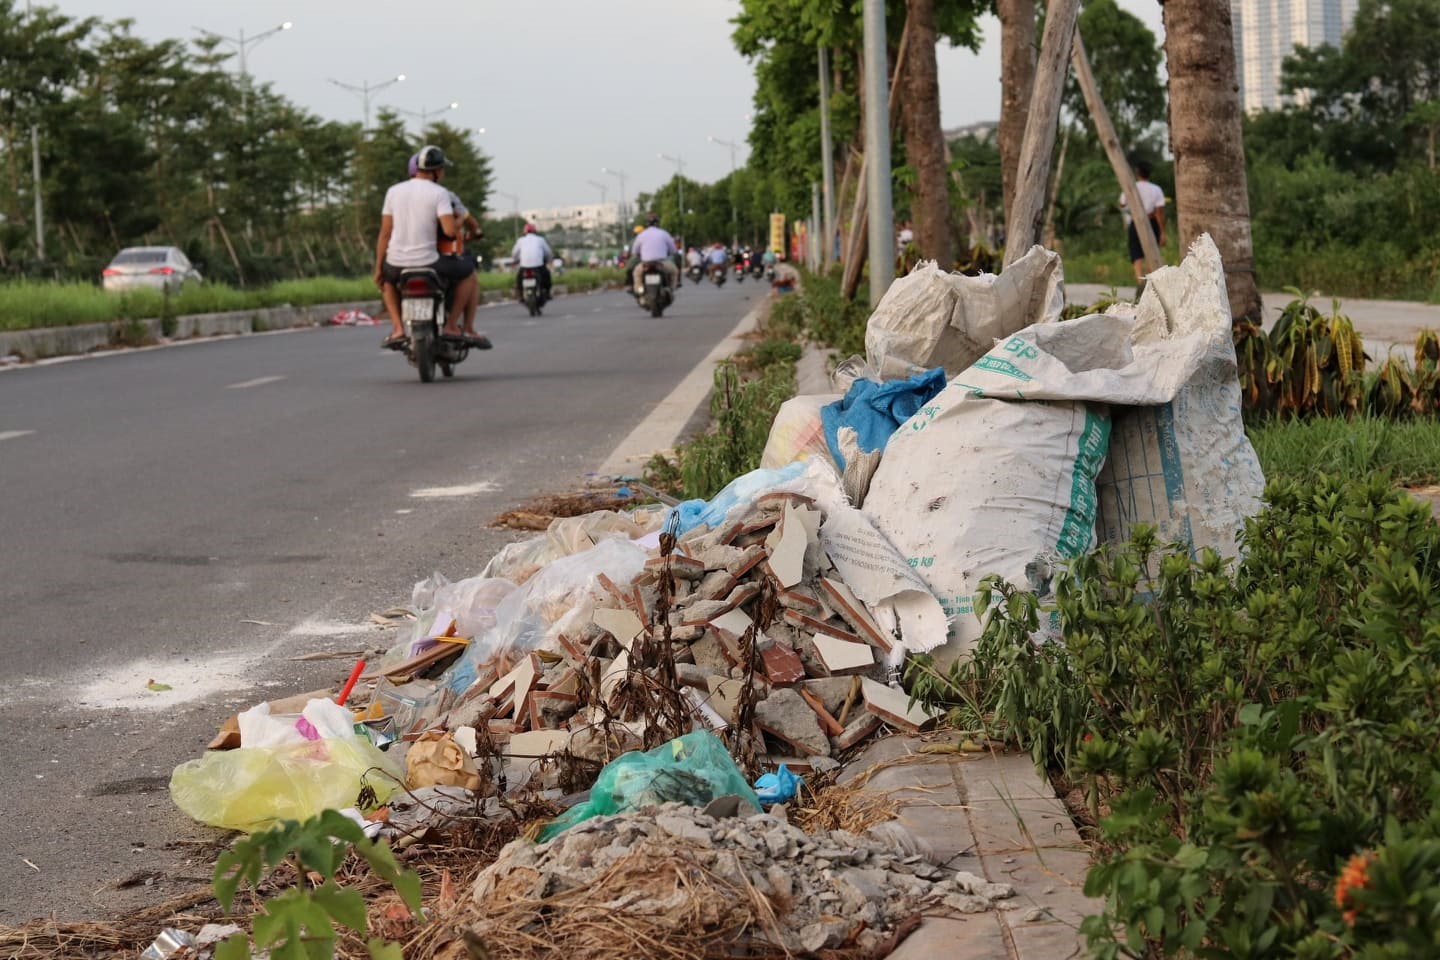 Tuy chỉ dài khoảng 2.5 km, thế nhưng hiện nay trên Đại lộ có đến hàng chục bãi rác tự phát làm mất mỹ quan đô thị.